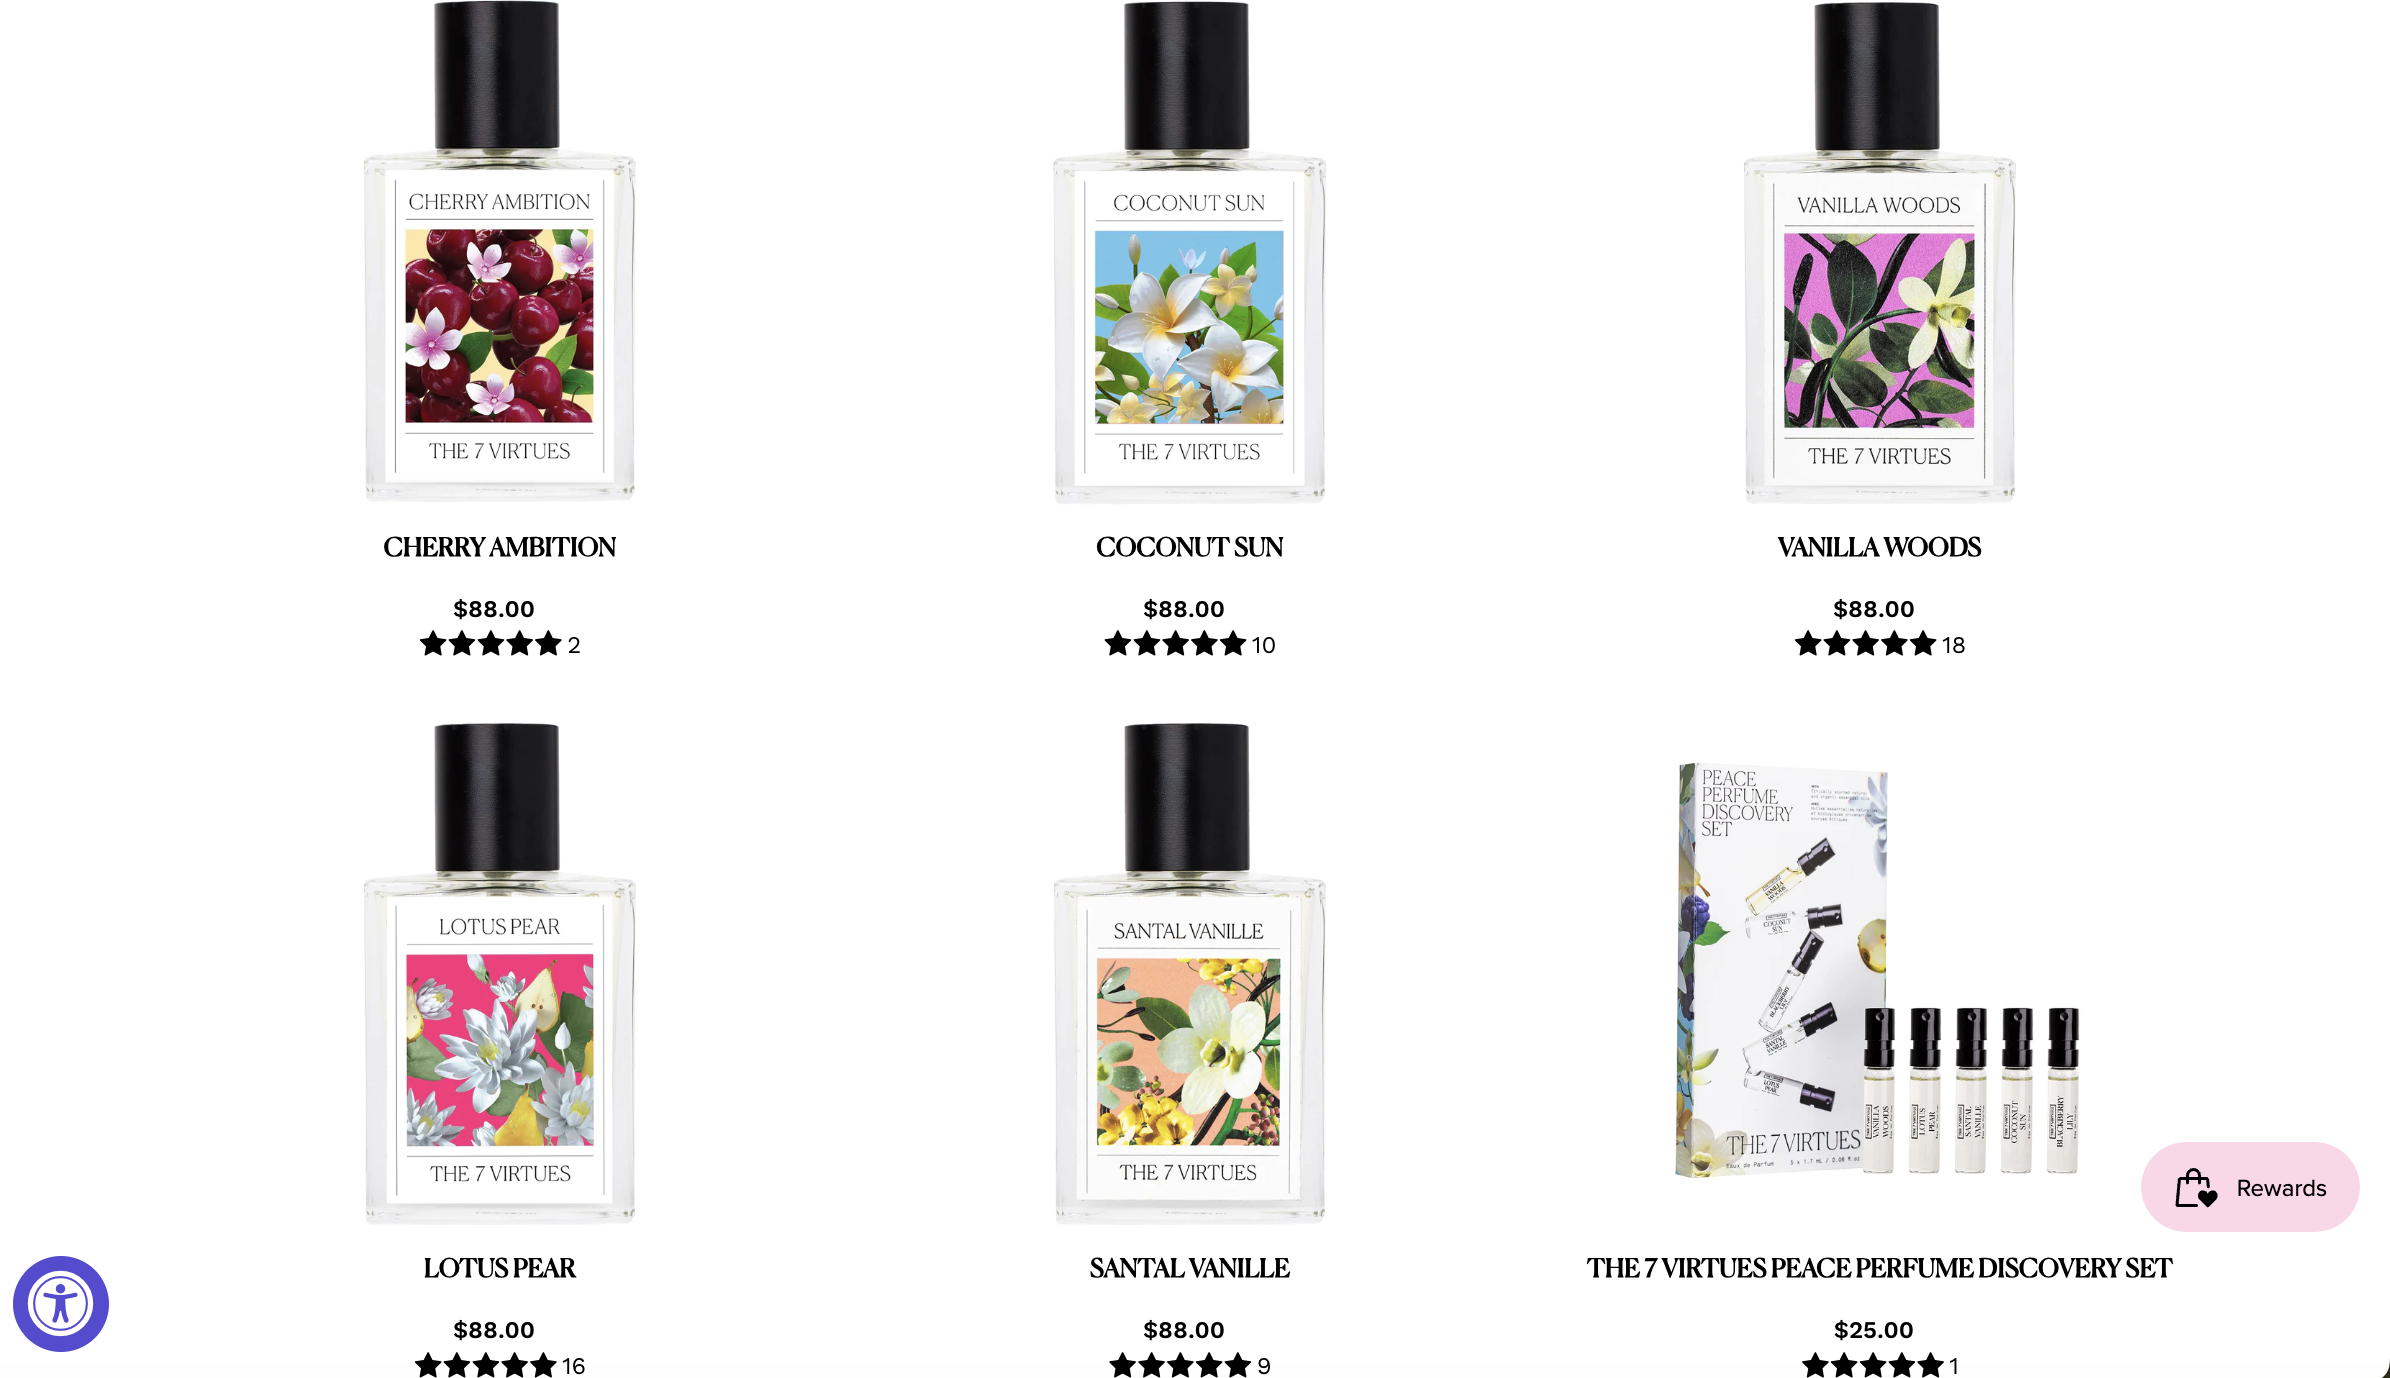 联合利华风投部门投资加拿大清洁香水品牌 The 7 Virtues 